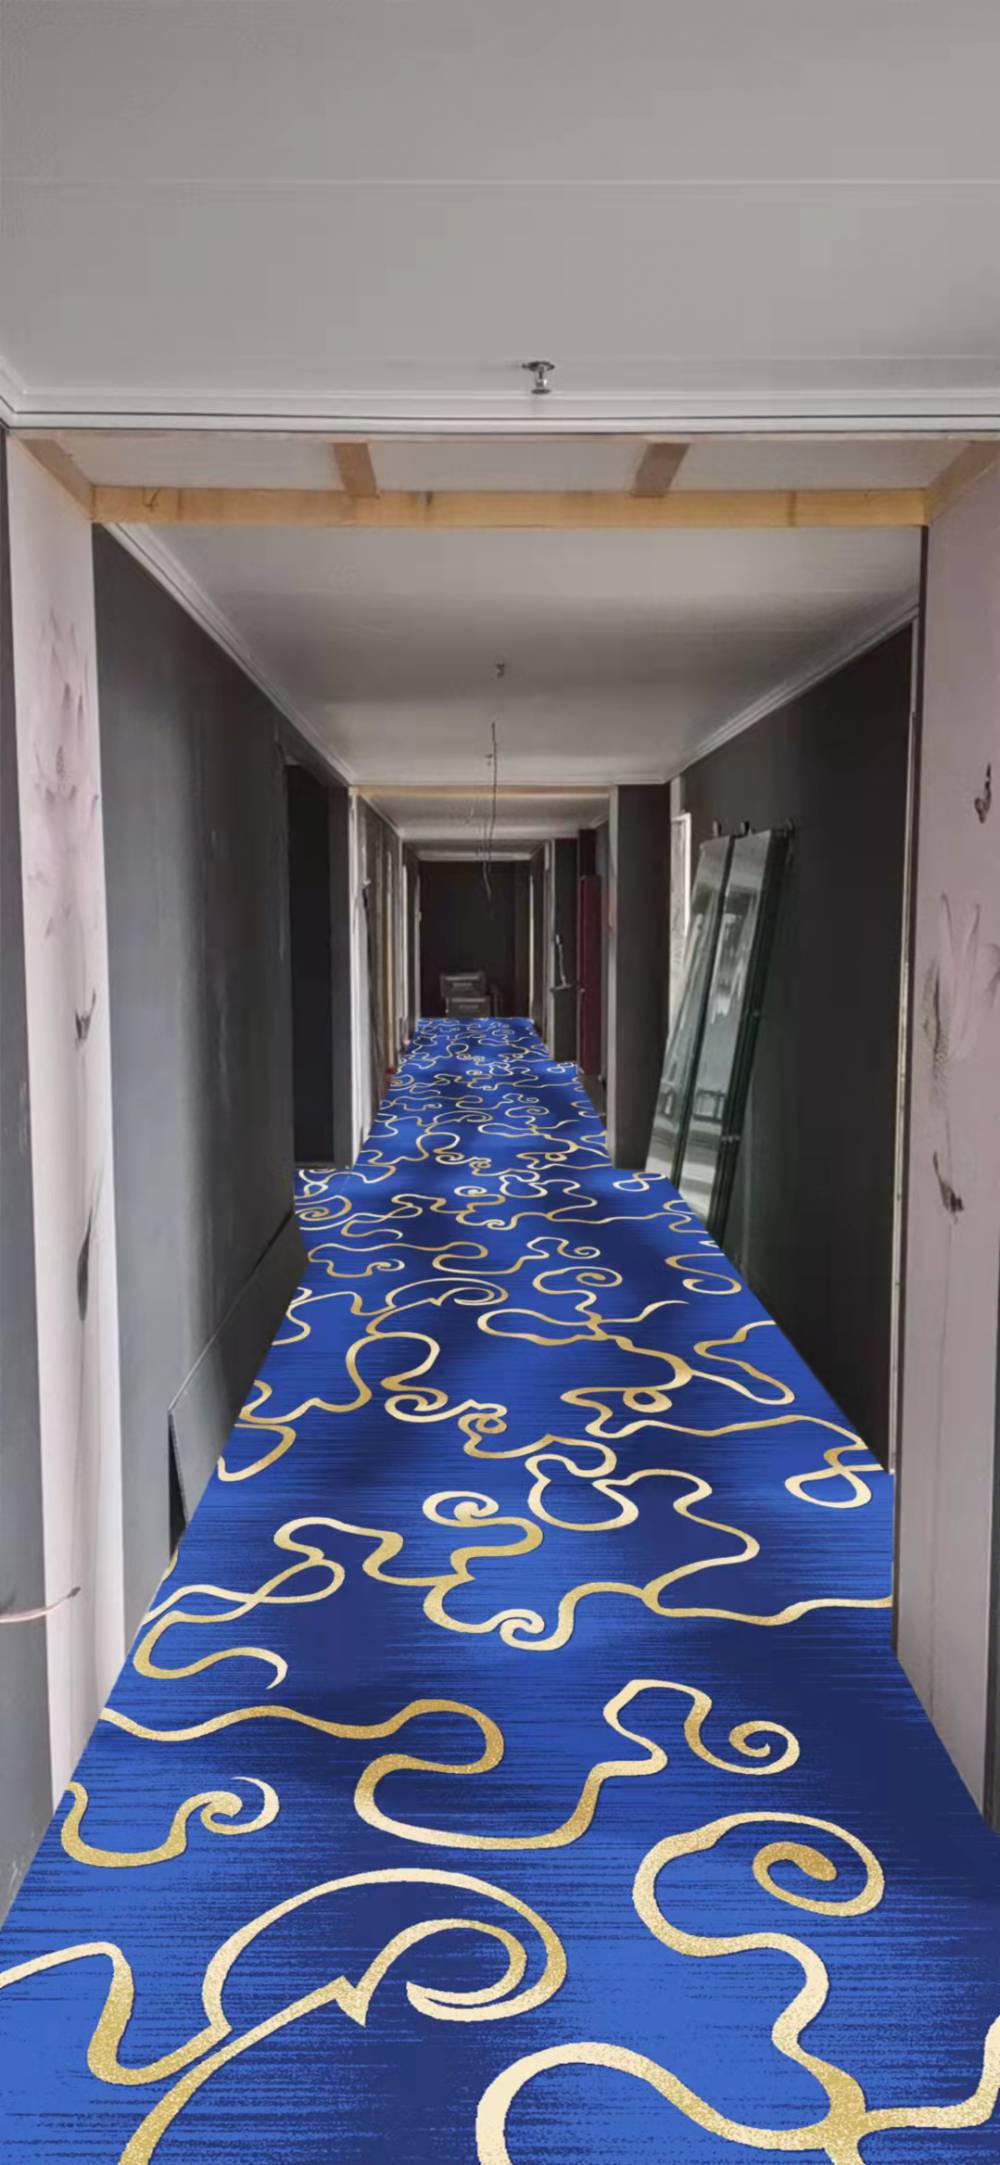 定制印花地毯OS-20主营：天锦订制印染地毯 定制印花地毯时尚新潮